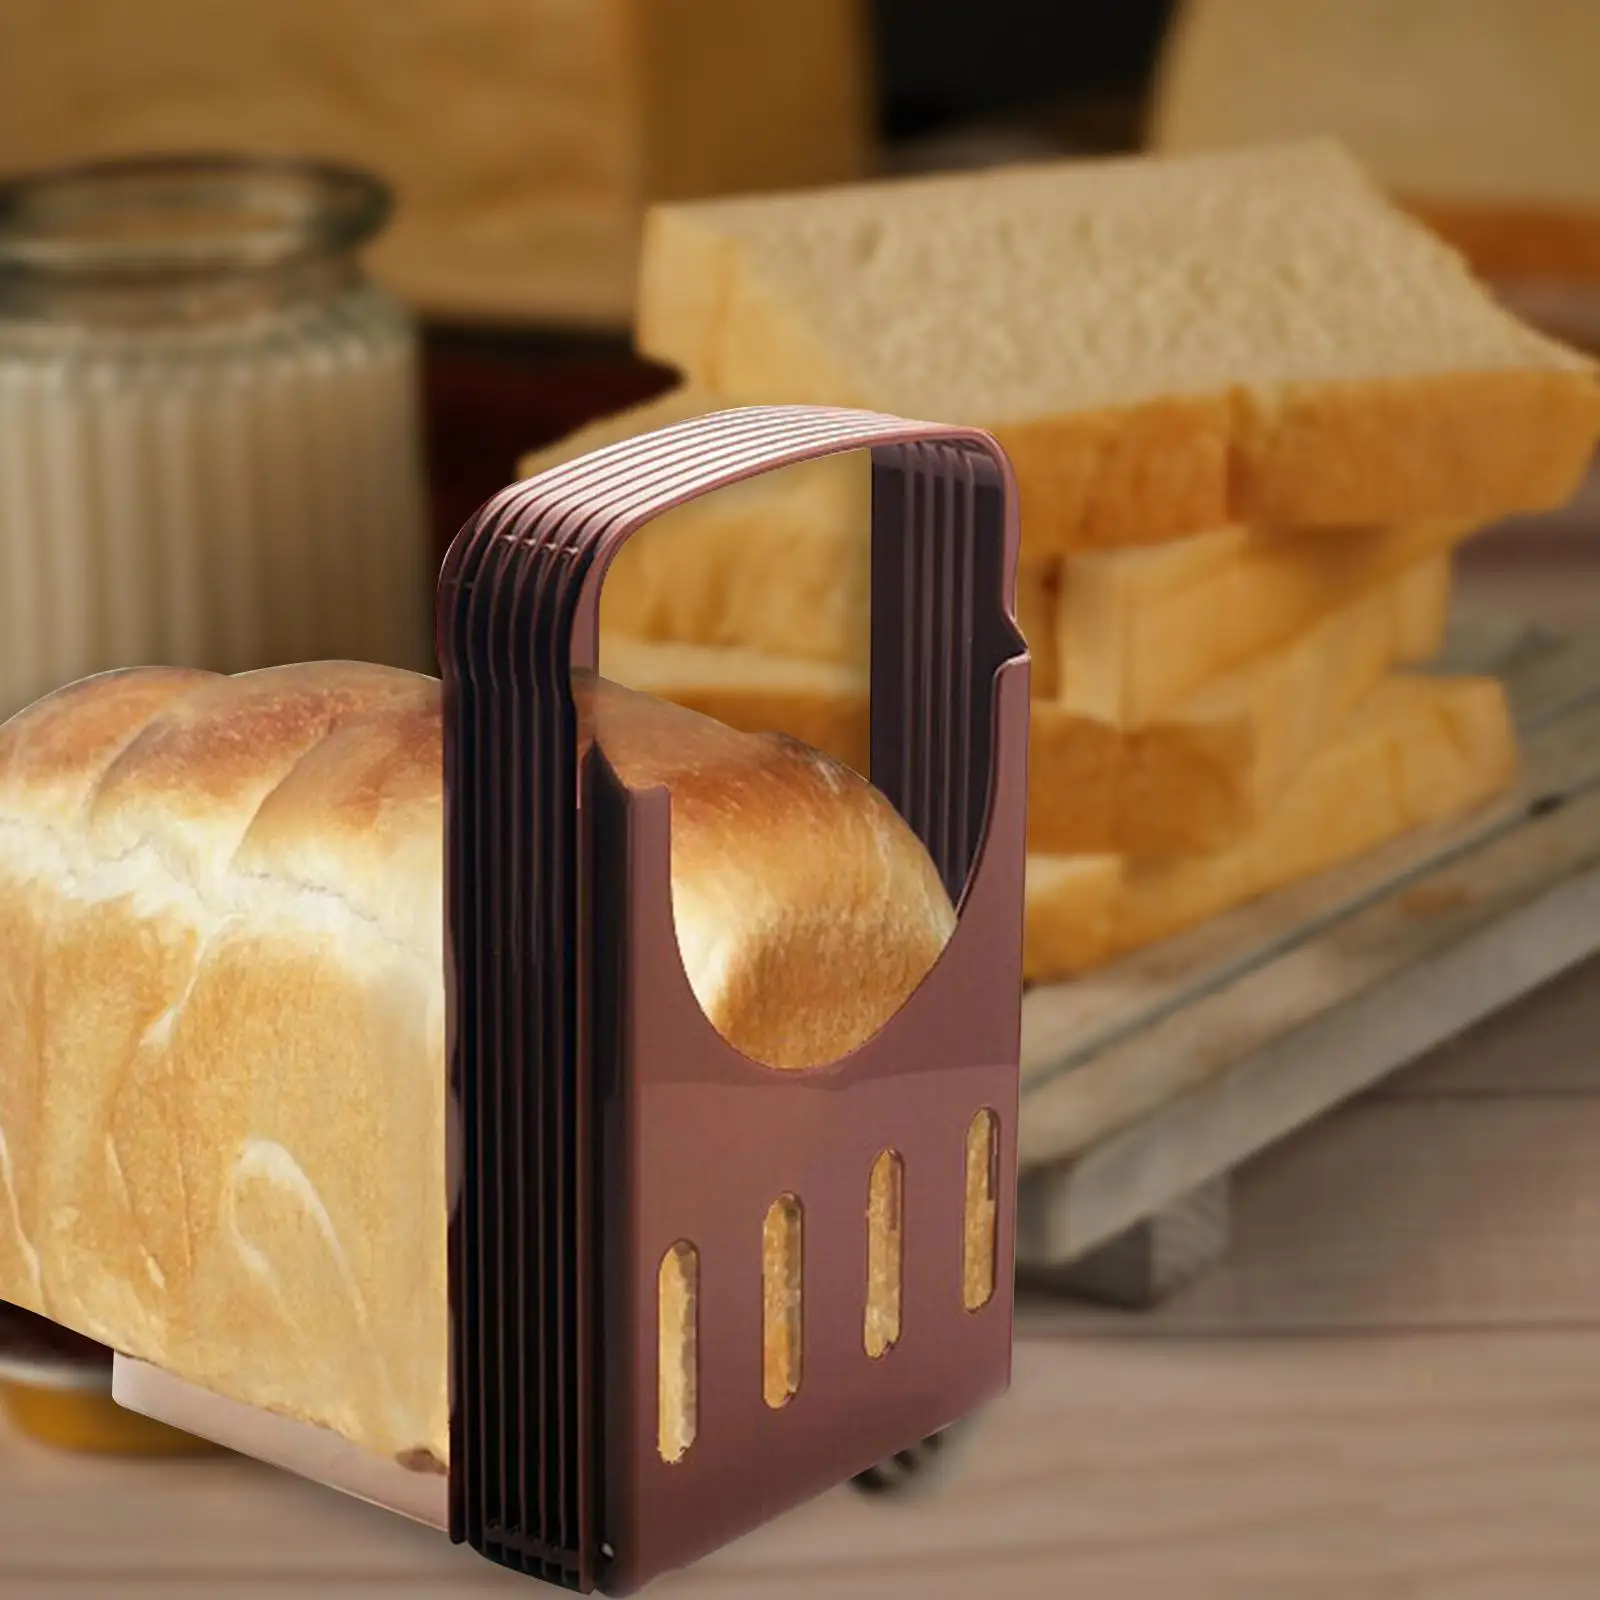 Bread Slicer Machine Bread Loaf Slicer Cutting Guide Manual Toast Slicer Adjustable Toast Cutter for Slicing Kitchen Baking